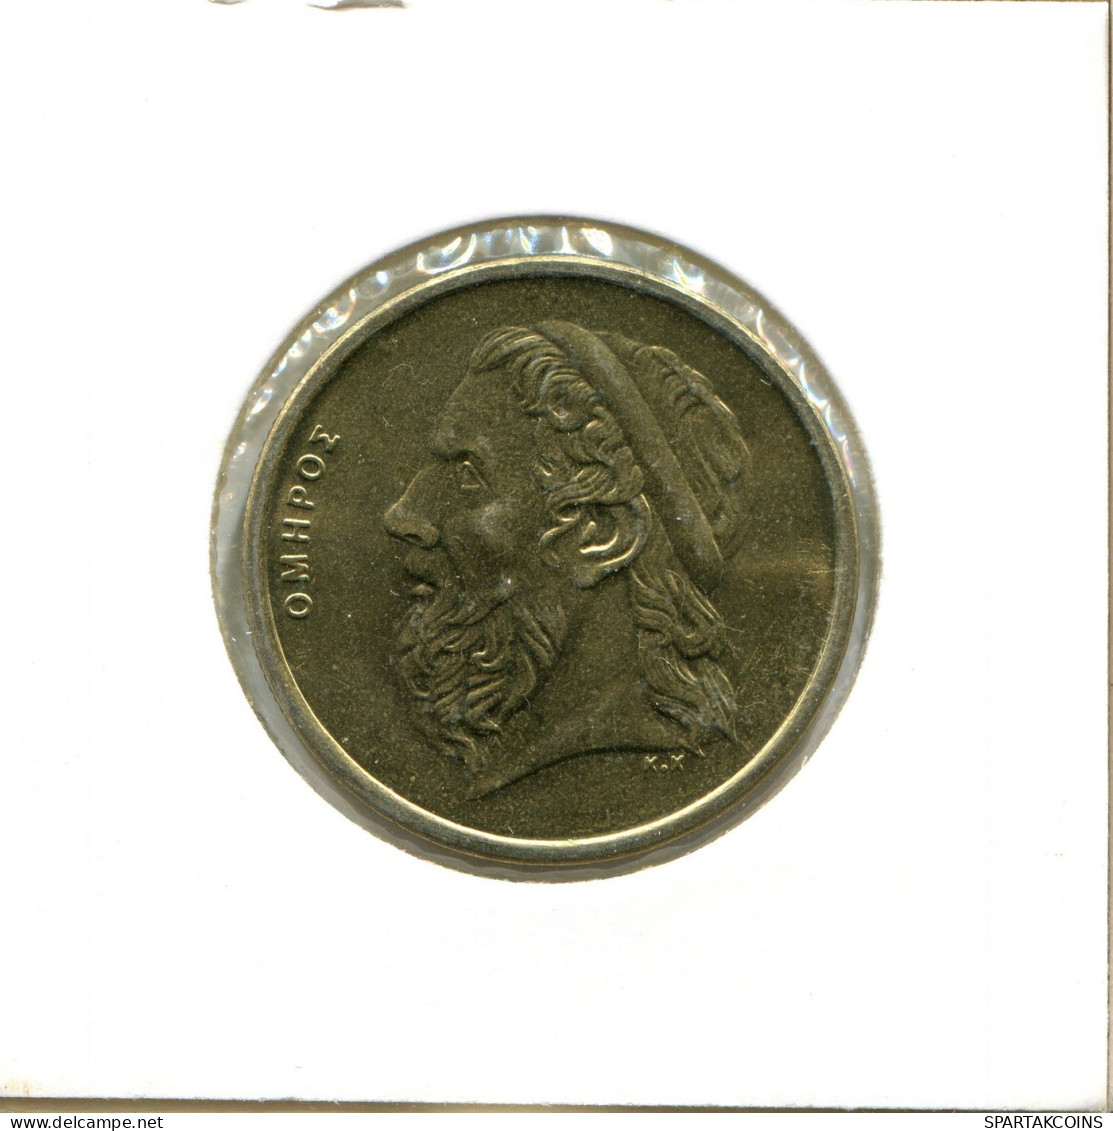 50 DRACHMES 1988 GRECIA GREECE Moneda #AX657.E.A - Greece